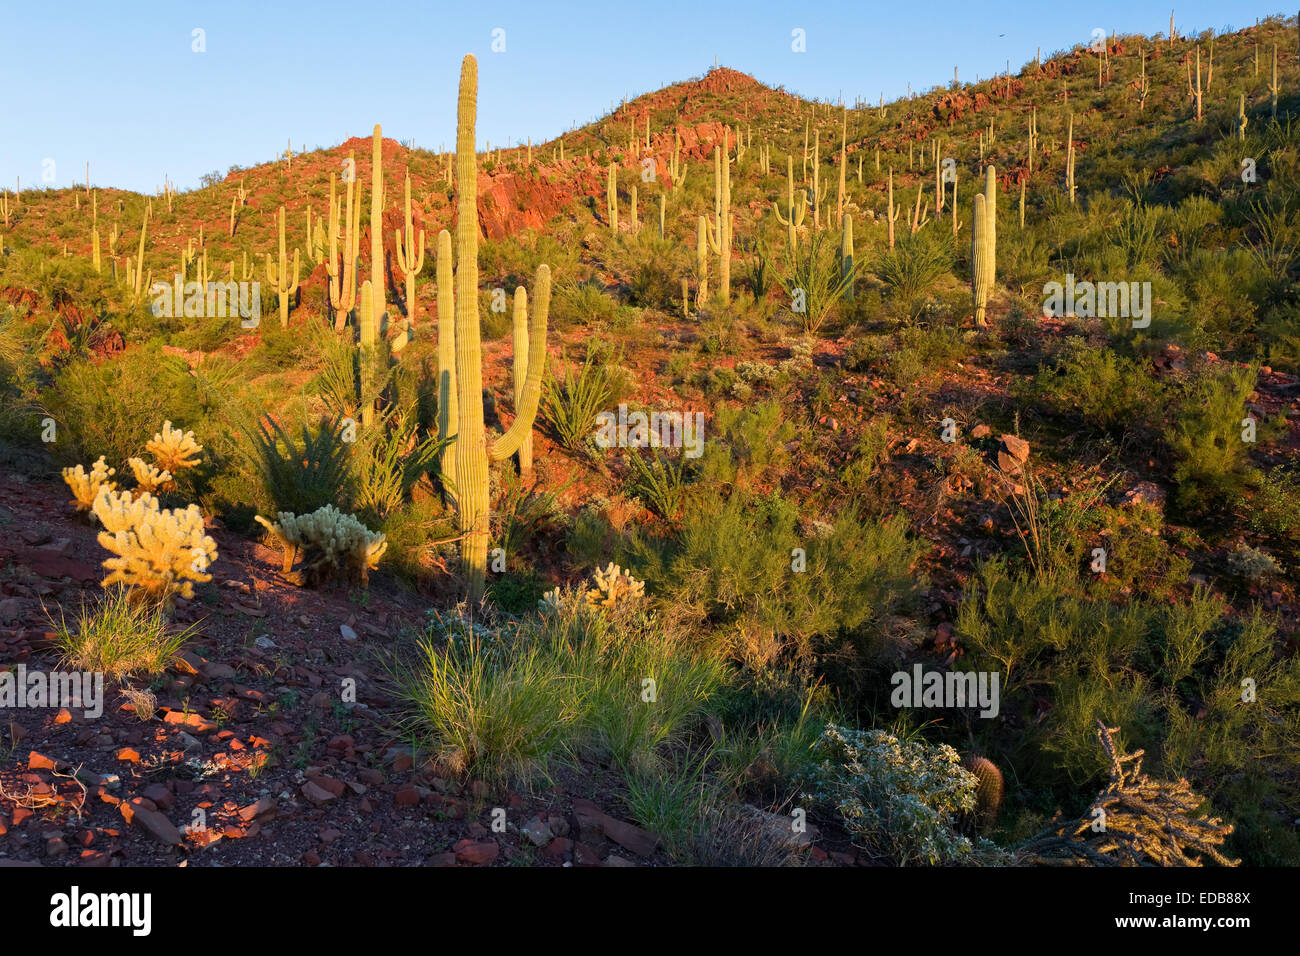 Sonoran luxuriante végétation contre red hills, Saguaro National Park West, Tucson, Arizona Banque D'Images